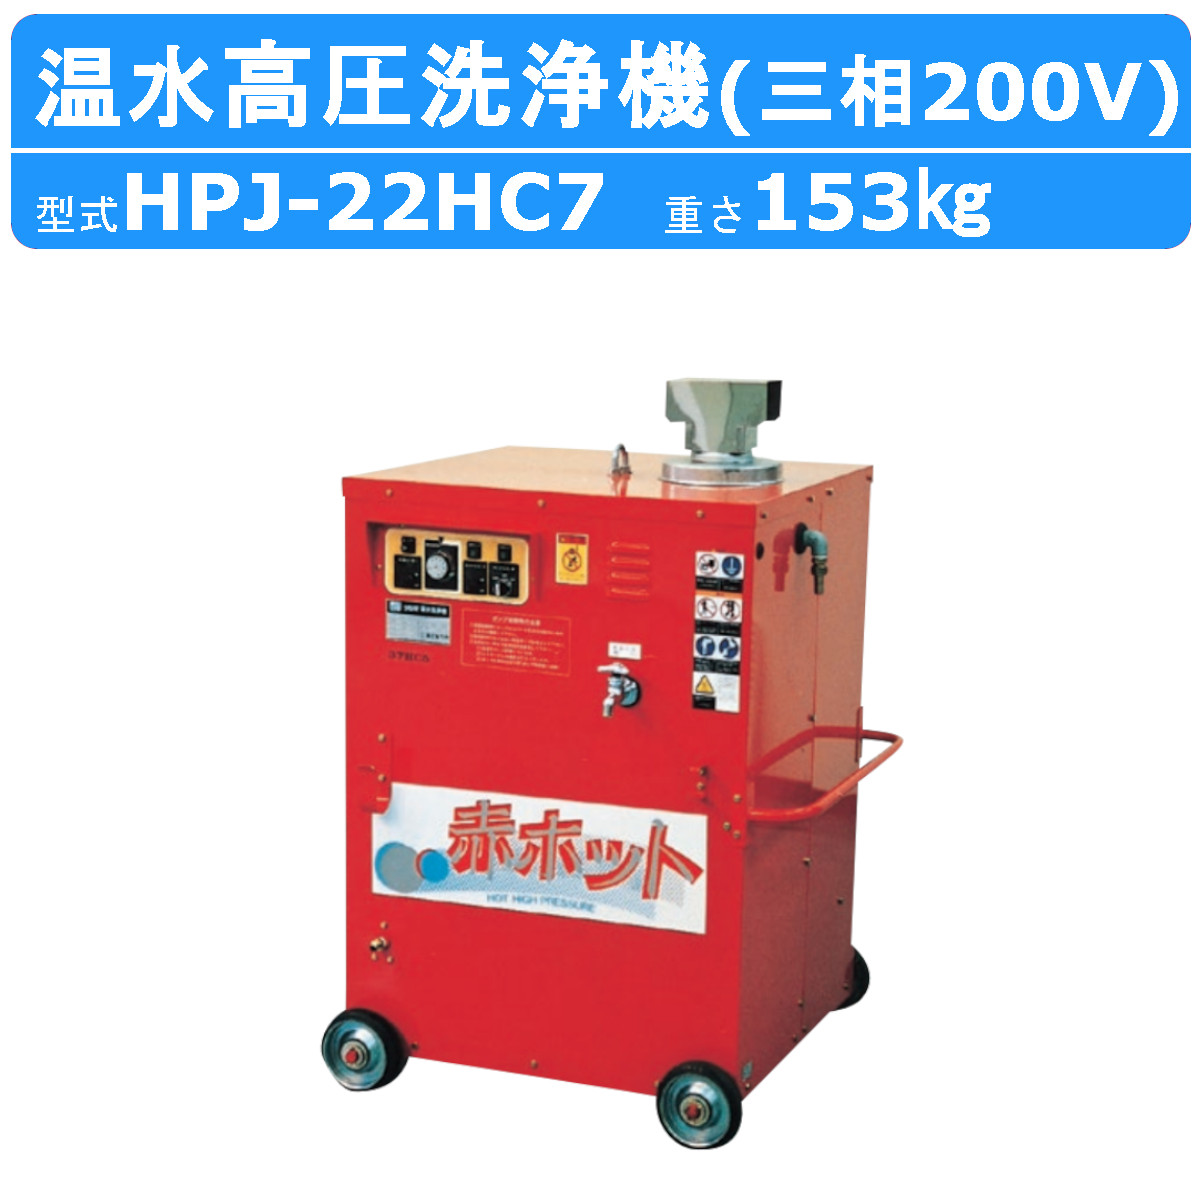 ツルミ 温水高圧洗浄機 HPJ-22HC7 三相200V 温水タイプ ノズル・吐水